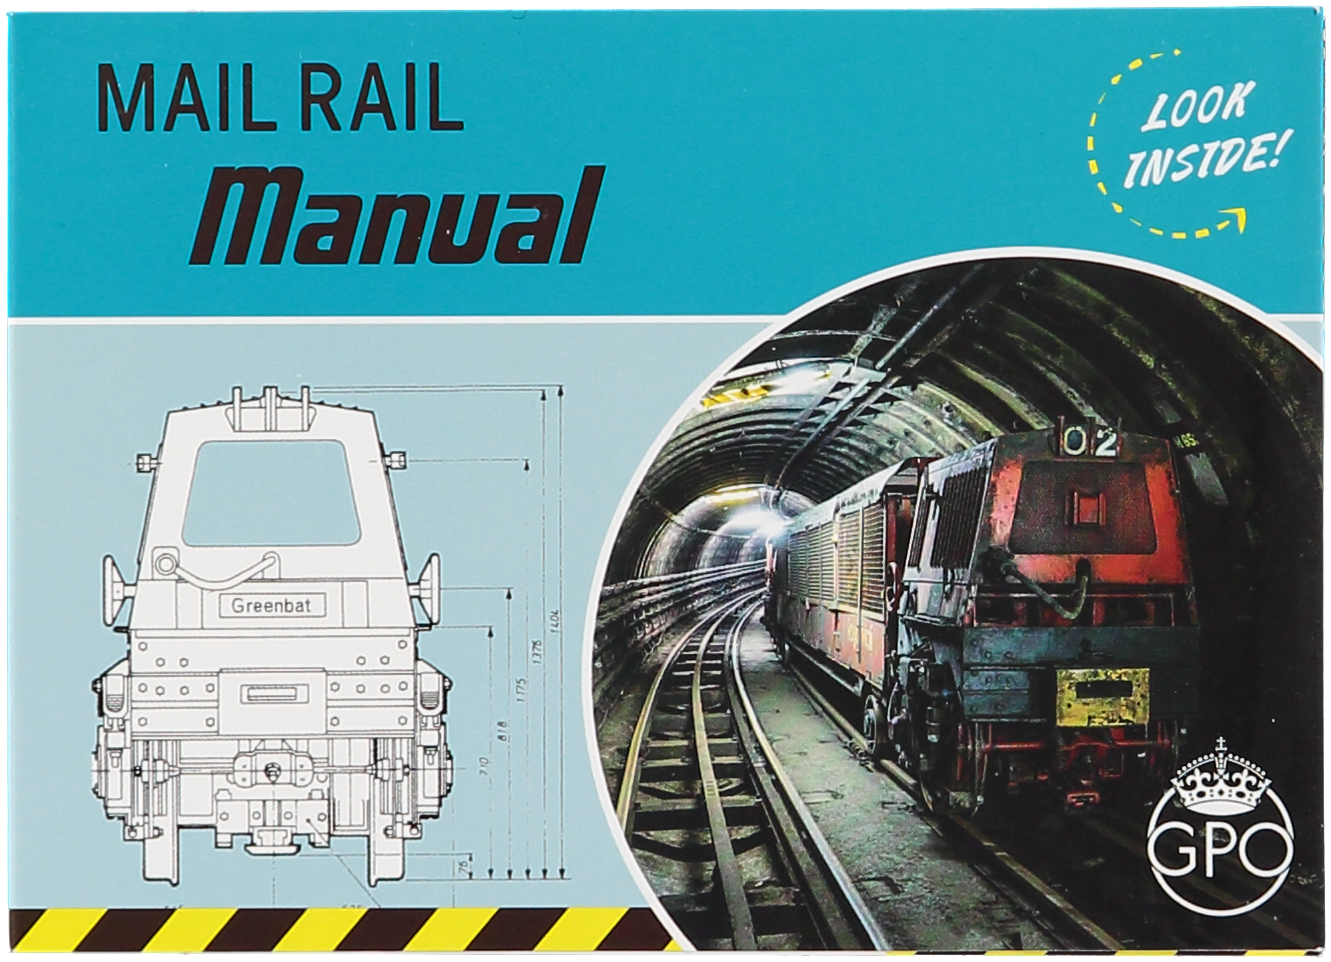 Mail Rail Manual